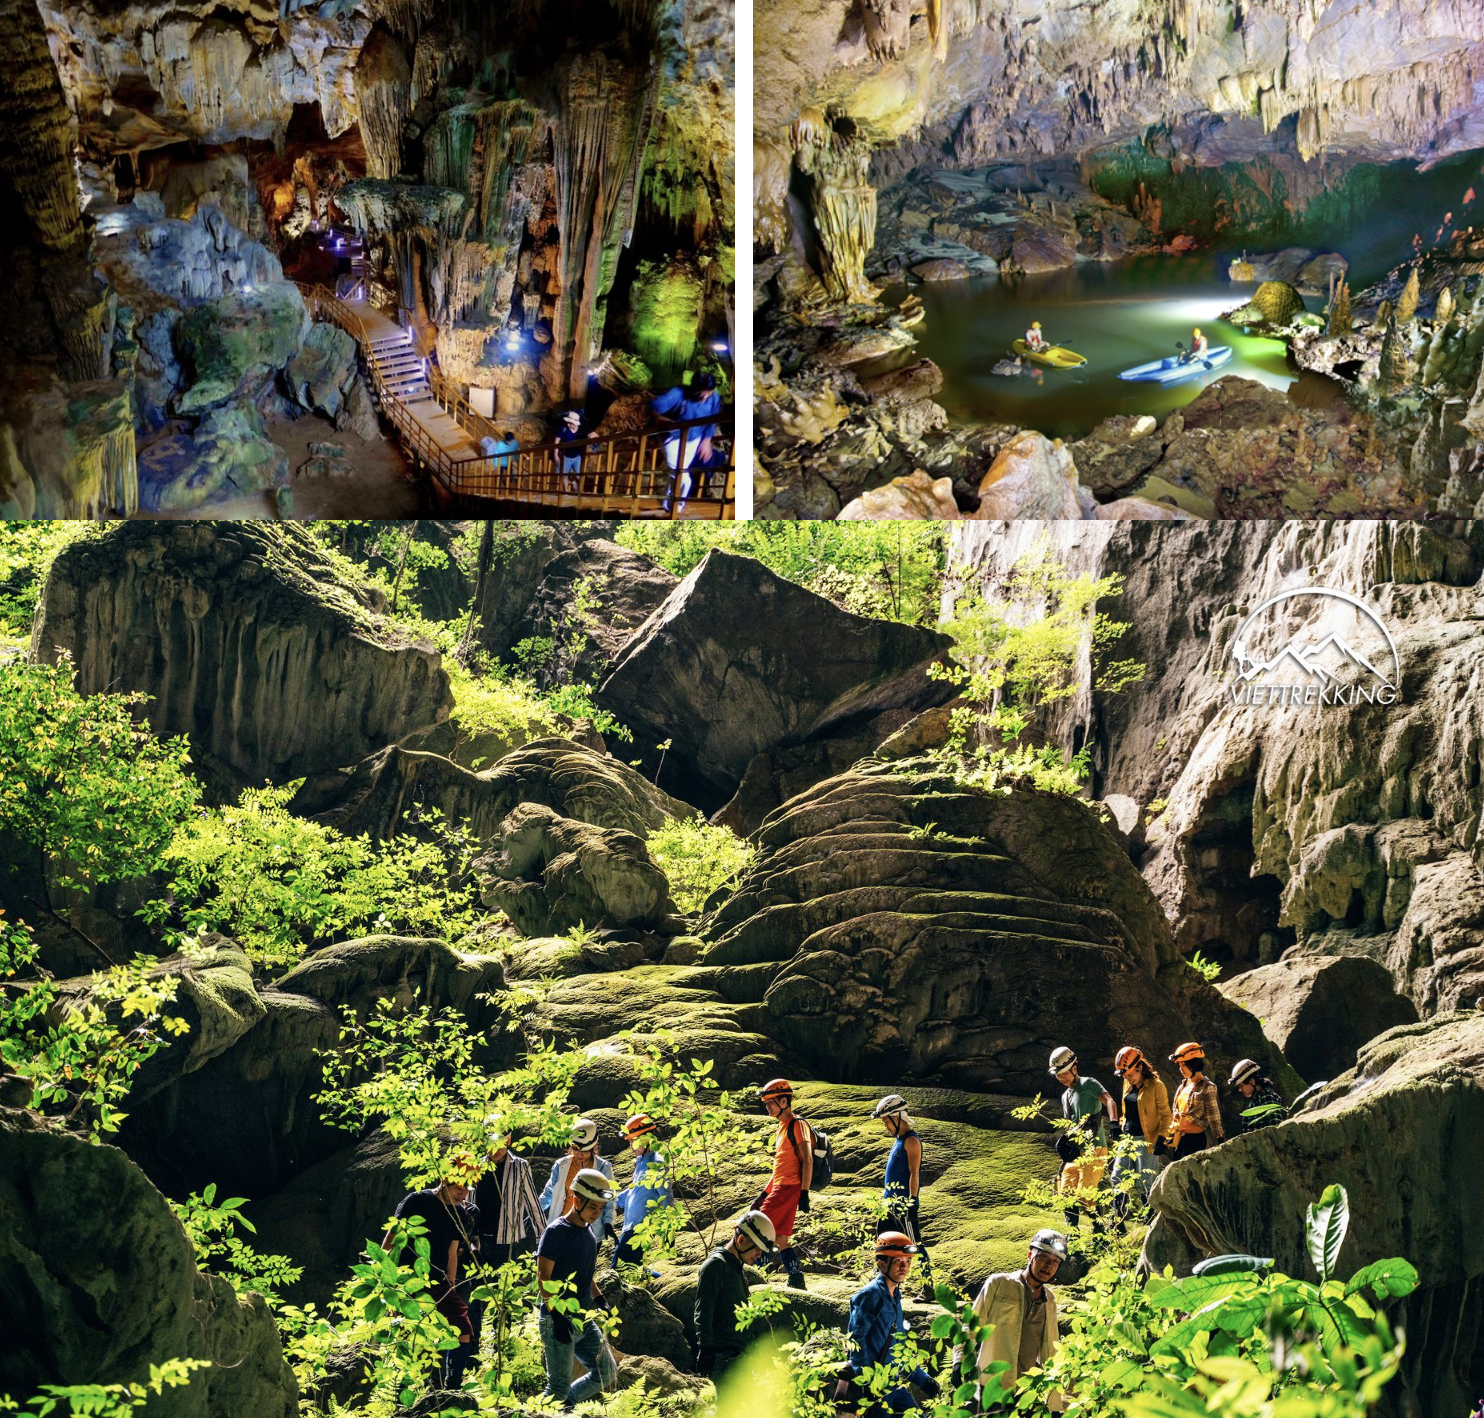 截至目前，丰芽-格邦国家公园共运营了15条旅游路线和旅游景点，种类丰富多样。